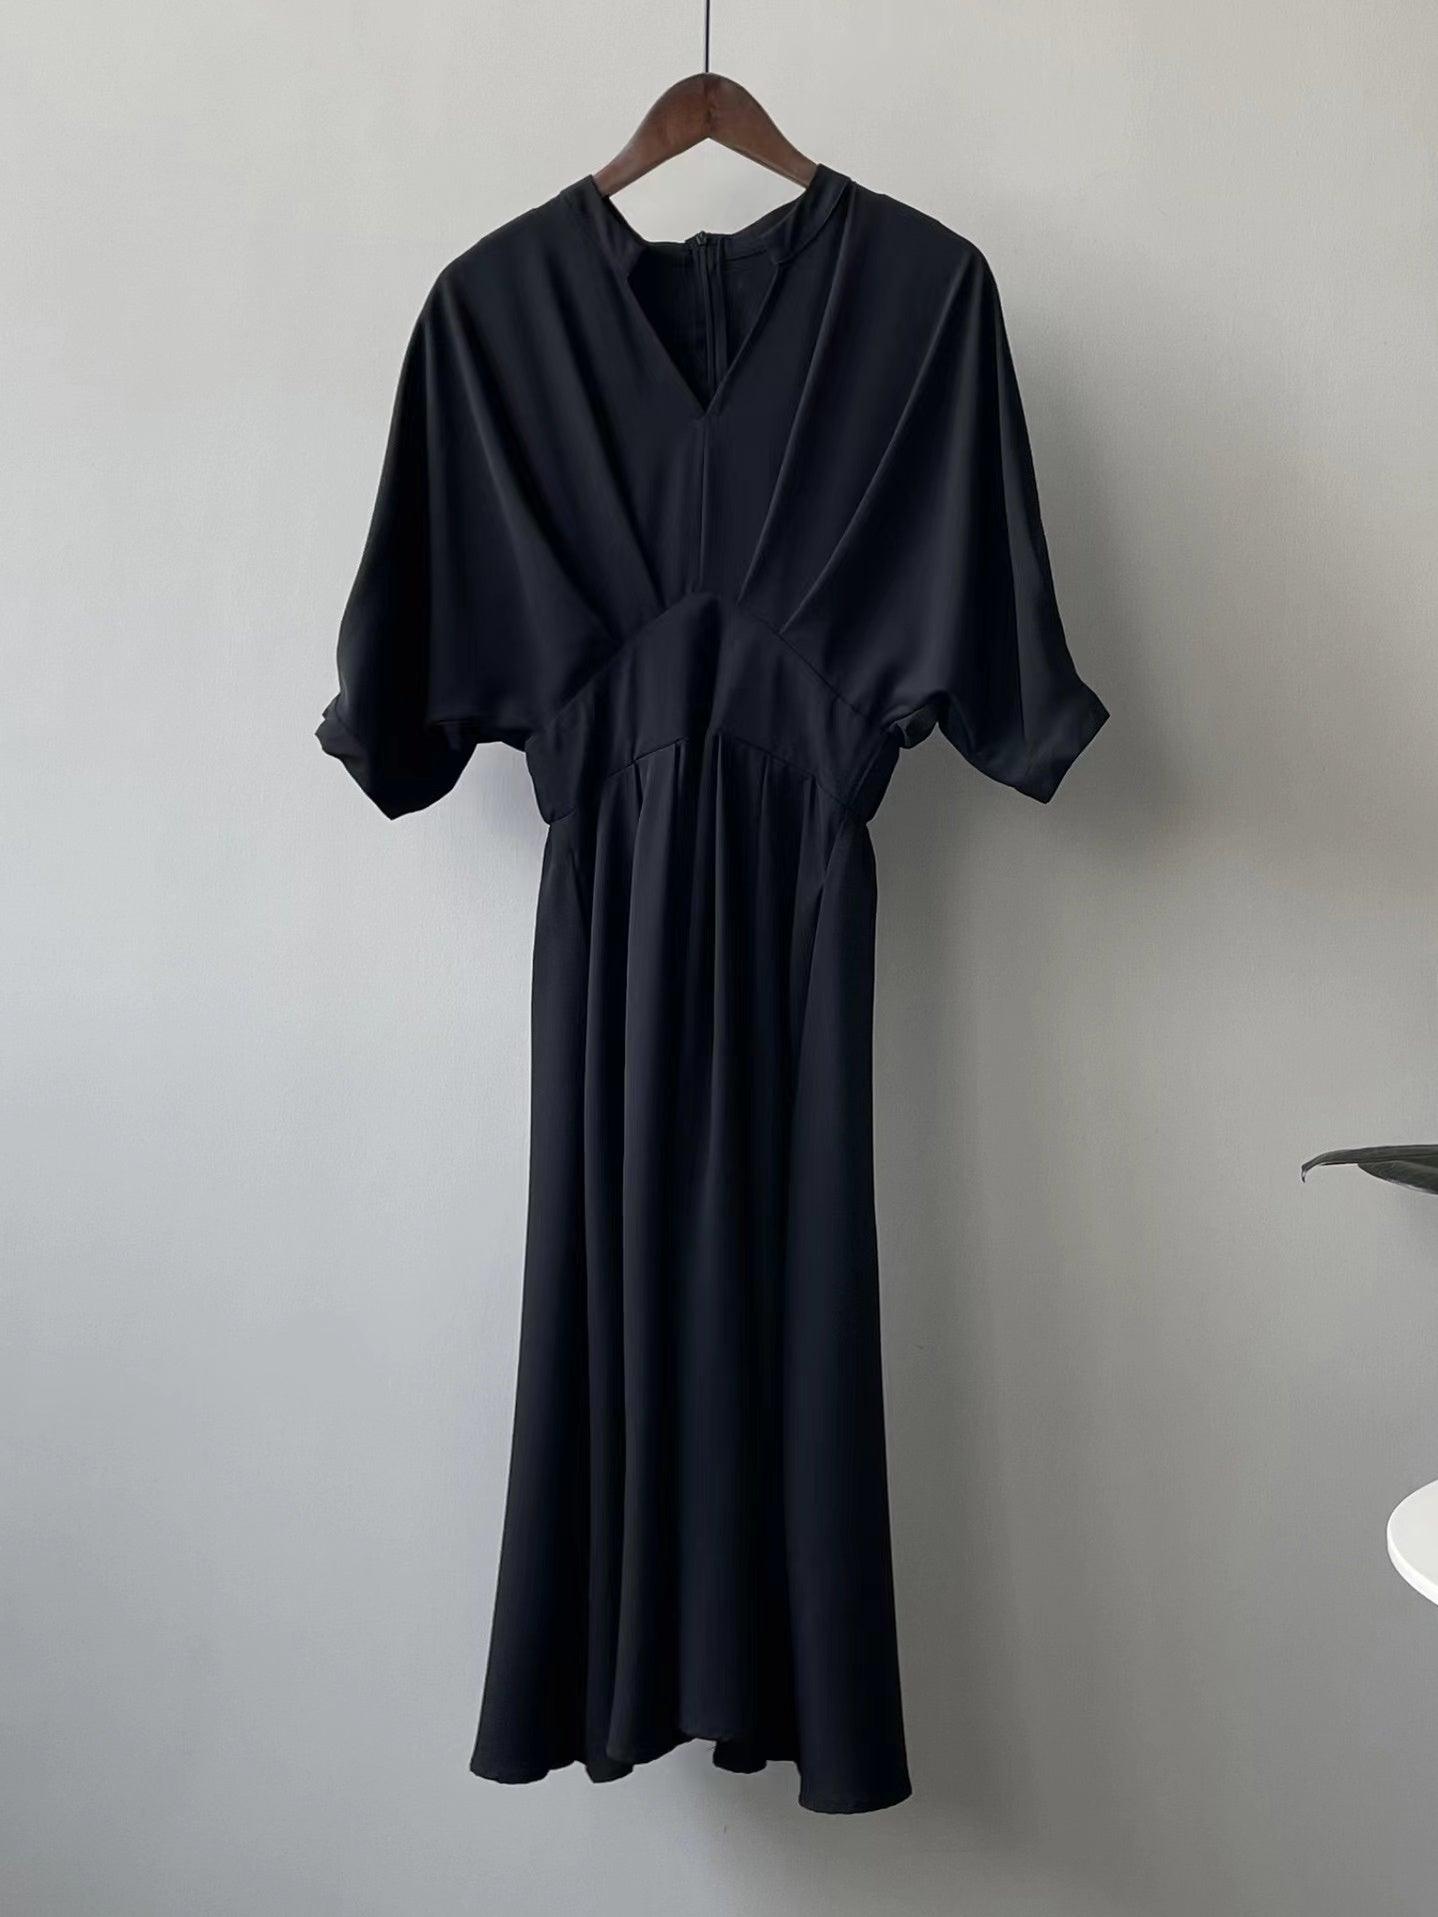 lovevop Hepburn Style V Neck Waist Dress